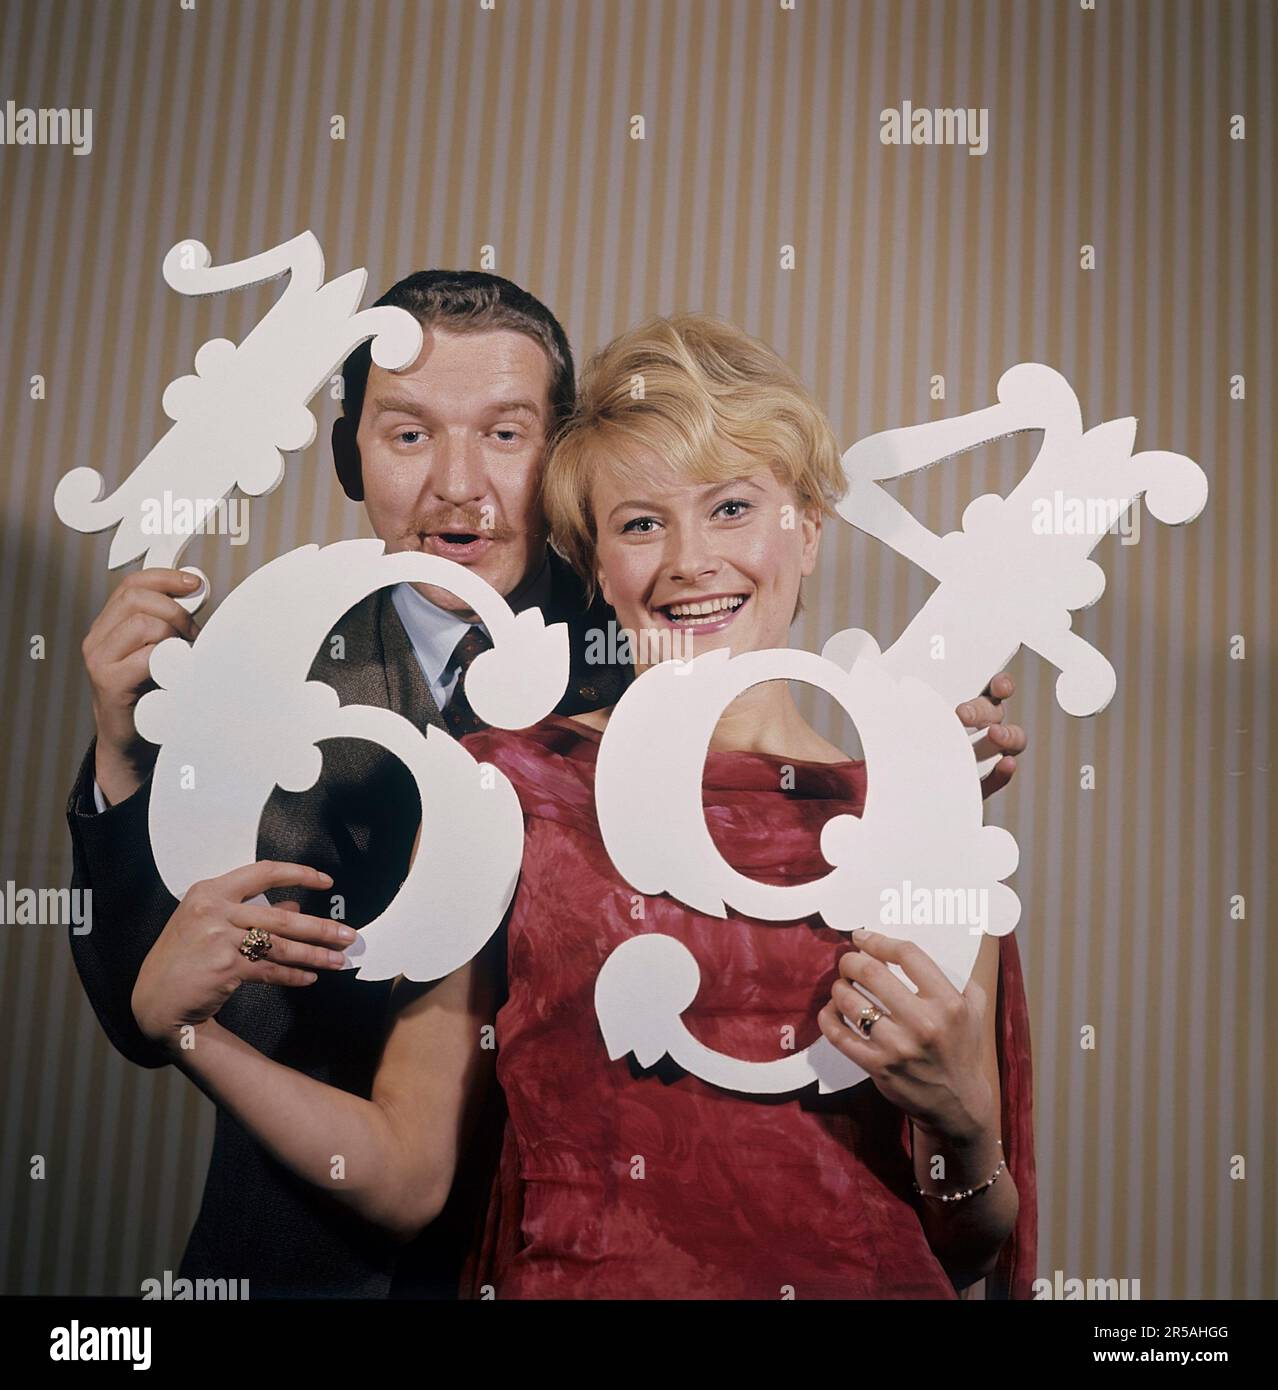 Spaß mit Zahlen in den 1960er. Eine Frau und ein Mann halten verschiedene Nummern in den Händen 1,4,6 und 9. Unklar ist, was der Zweck ist, abgesehen von der Vermutung, dass sie versuchen, sie als Jahreszahlen zusammenzufassen. Es gibt Schauspieler/Sänger Monica Zetterlund und Hans Alfredson, sehr gut bekannte schwedische Künstler. Schweden 1964 Stockfoto